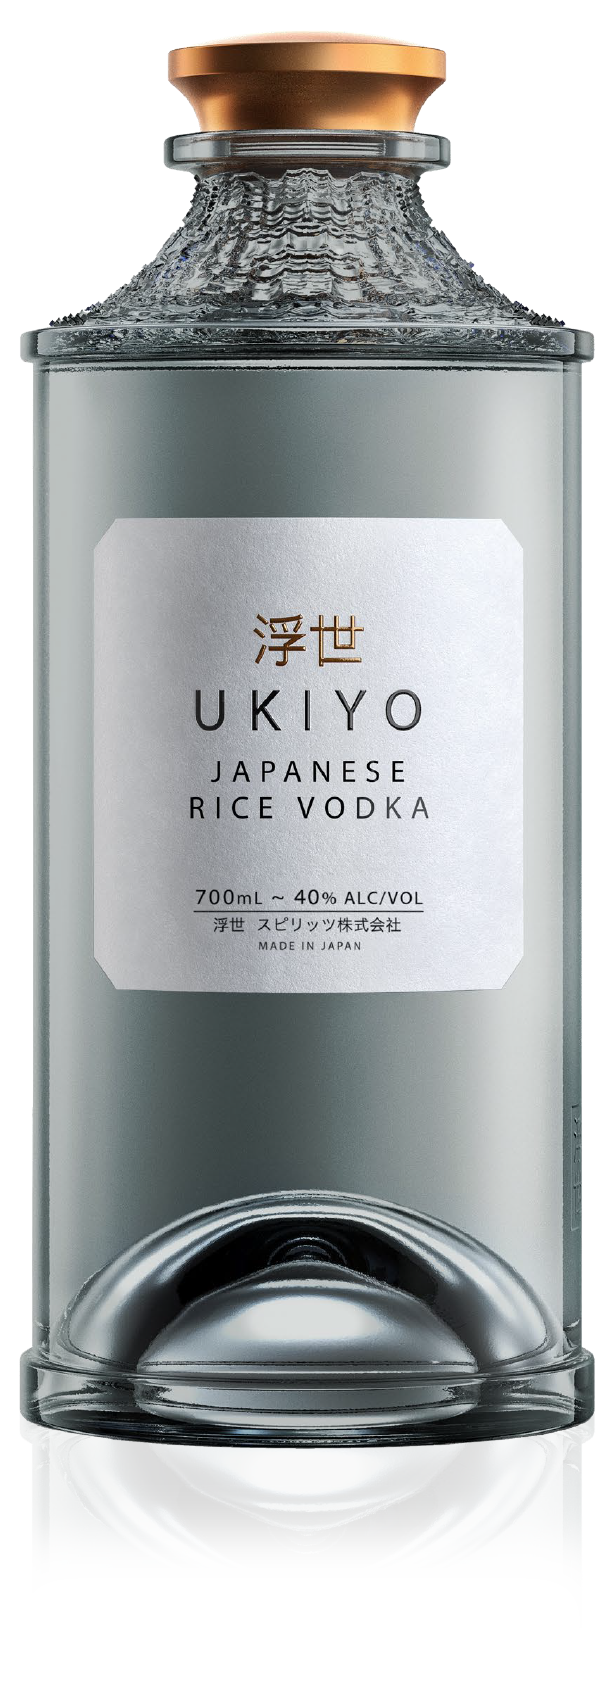 UKIYO Rice Vodka